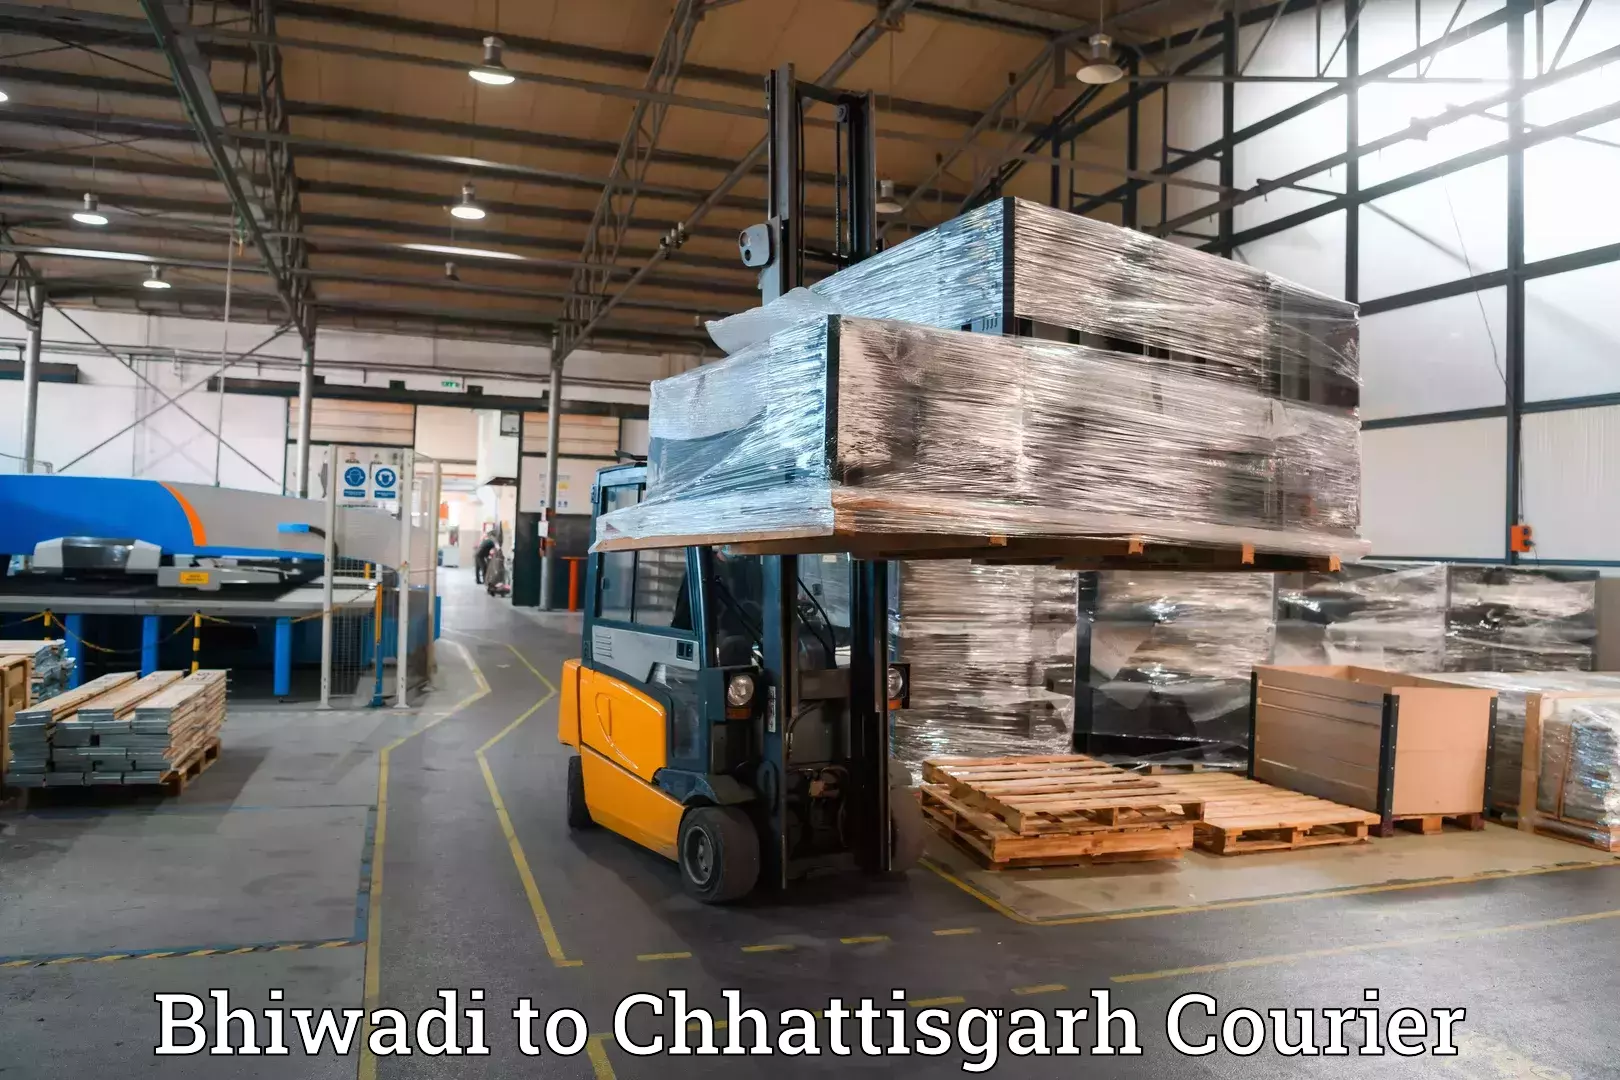 Baggage transport estimate Bhiwadi to Khairagarh